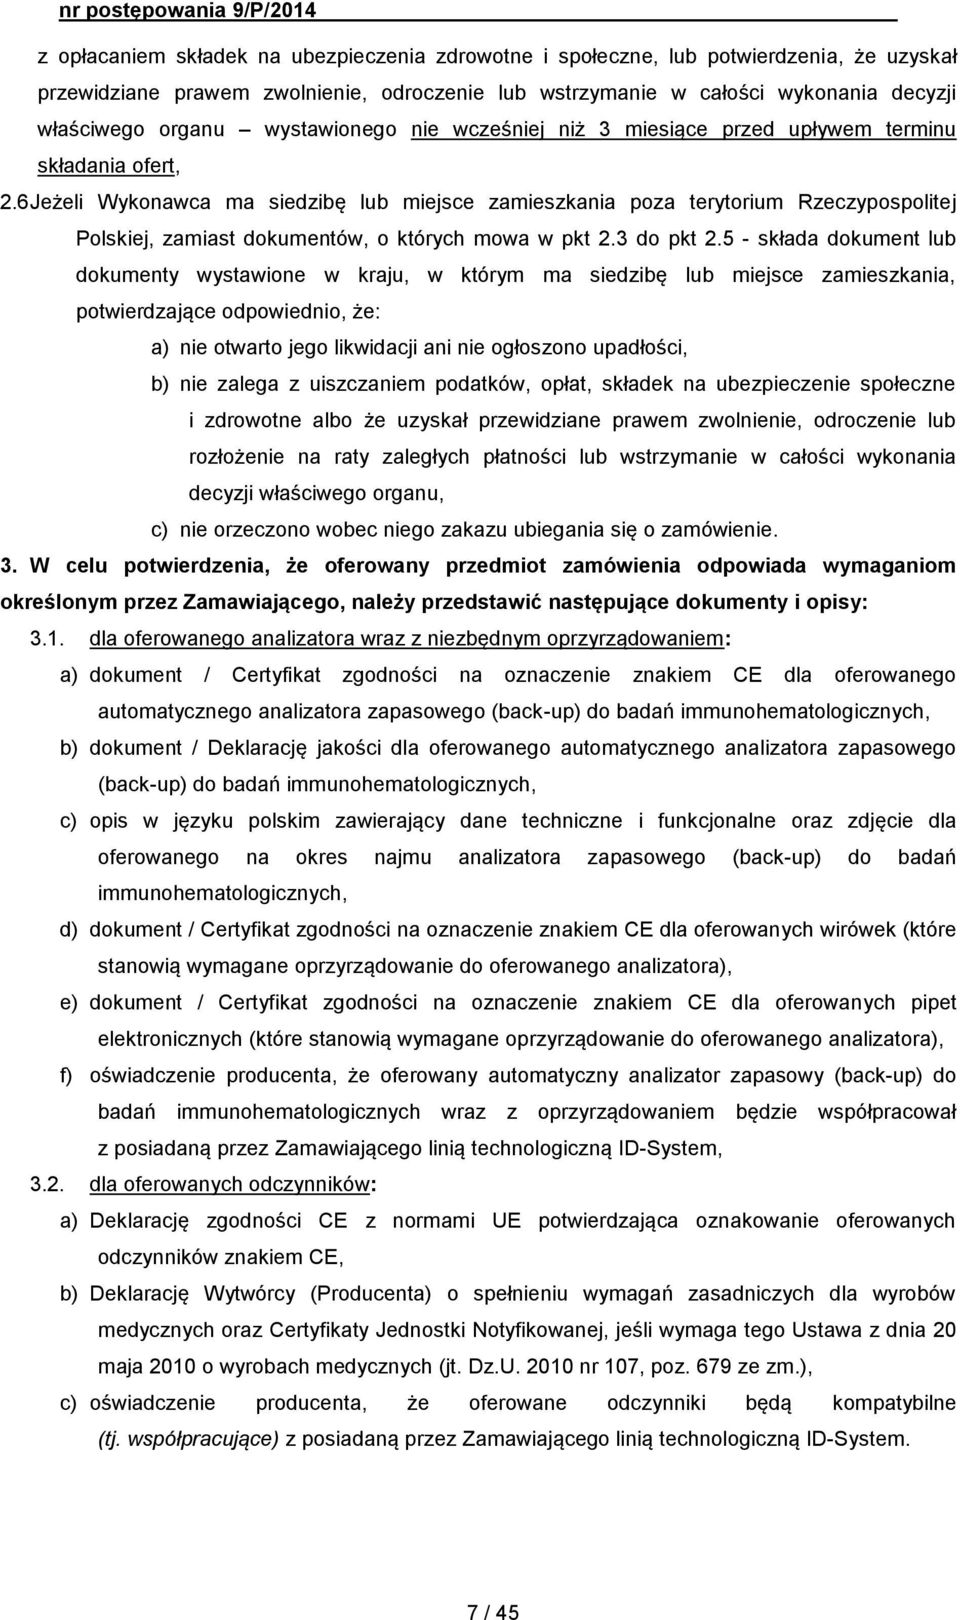 6 Jeżeli Wykonawca ma siedzibę lub miejsce zamieszkania poza terytorium Rzeczypospolitej Polskiej, zamiast dokumentów, o których mowa w pkt 2.3 do pkt 2.